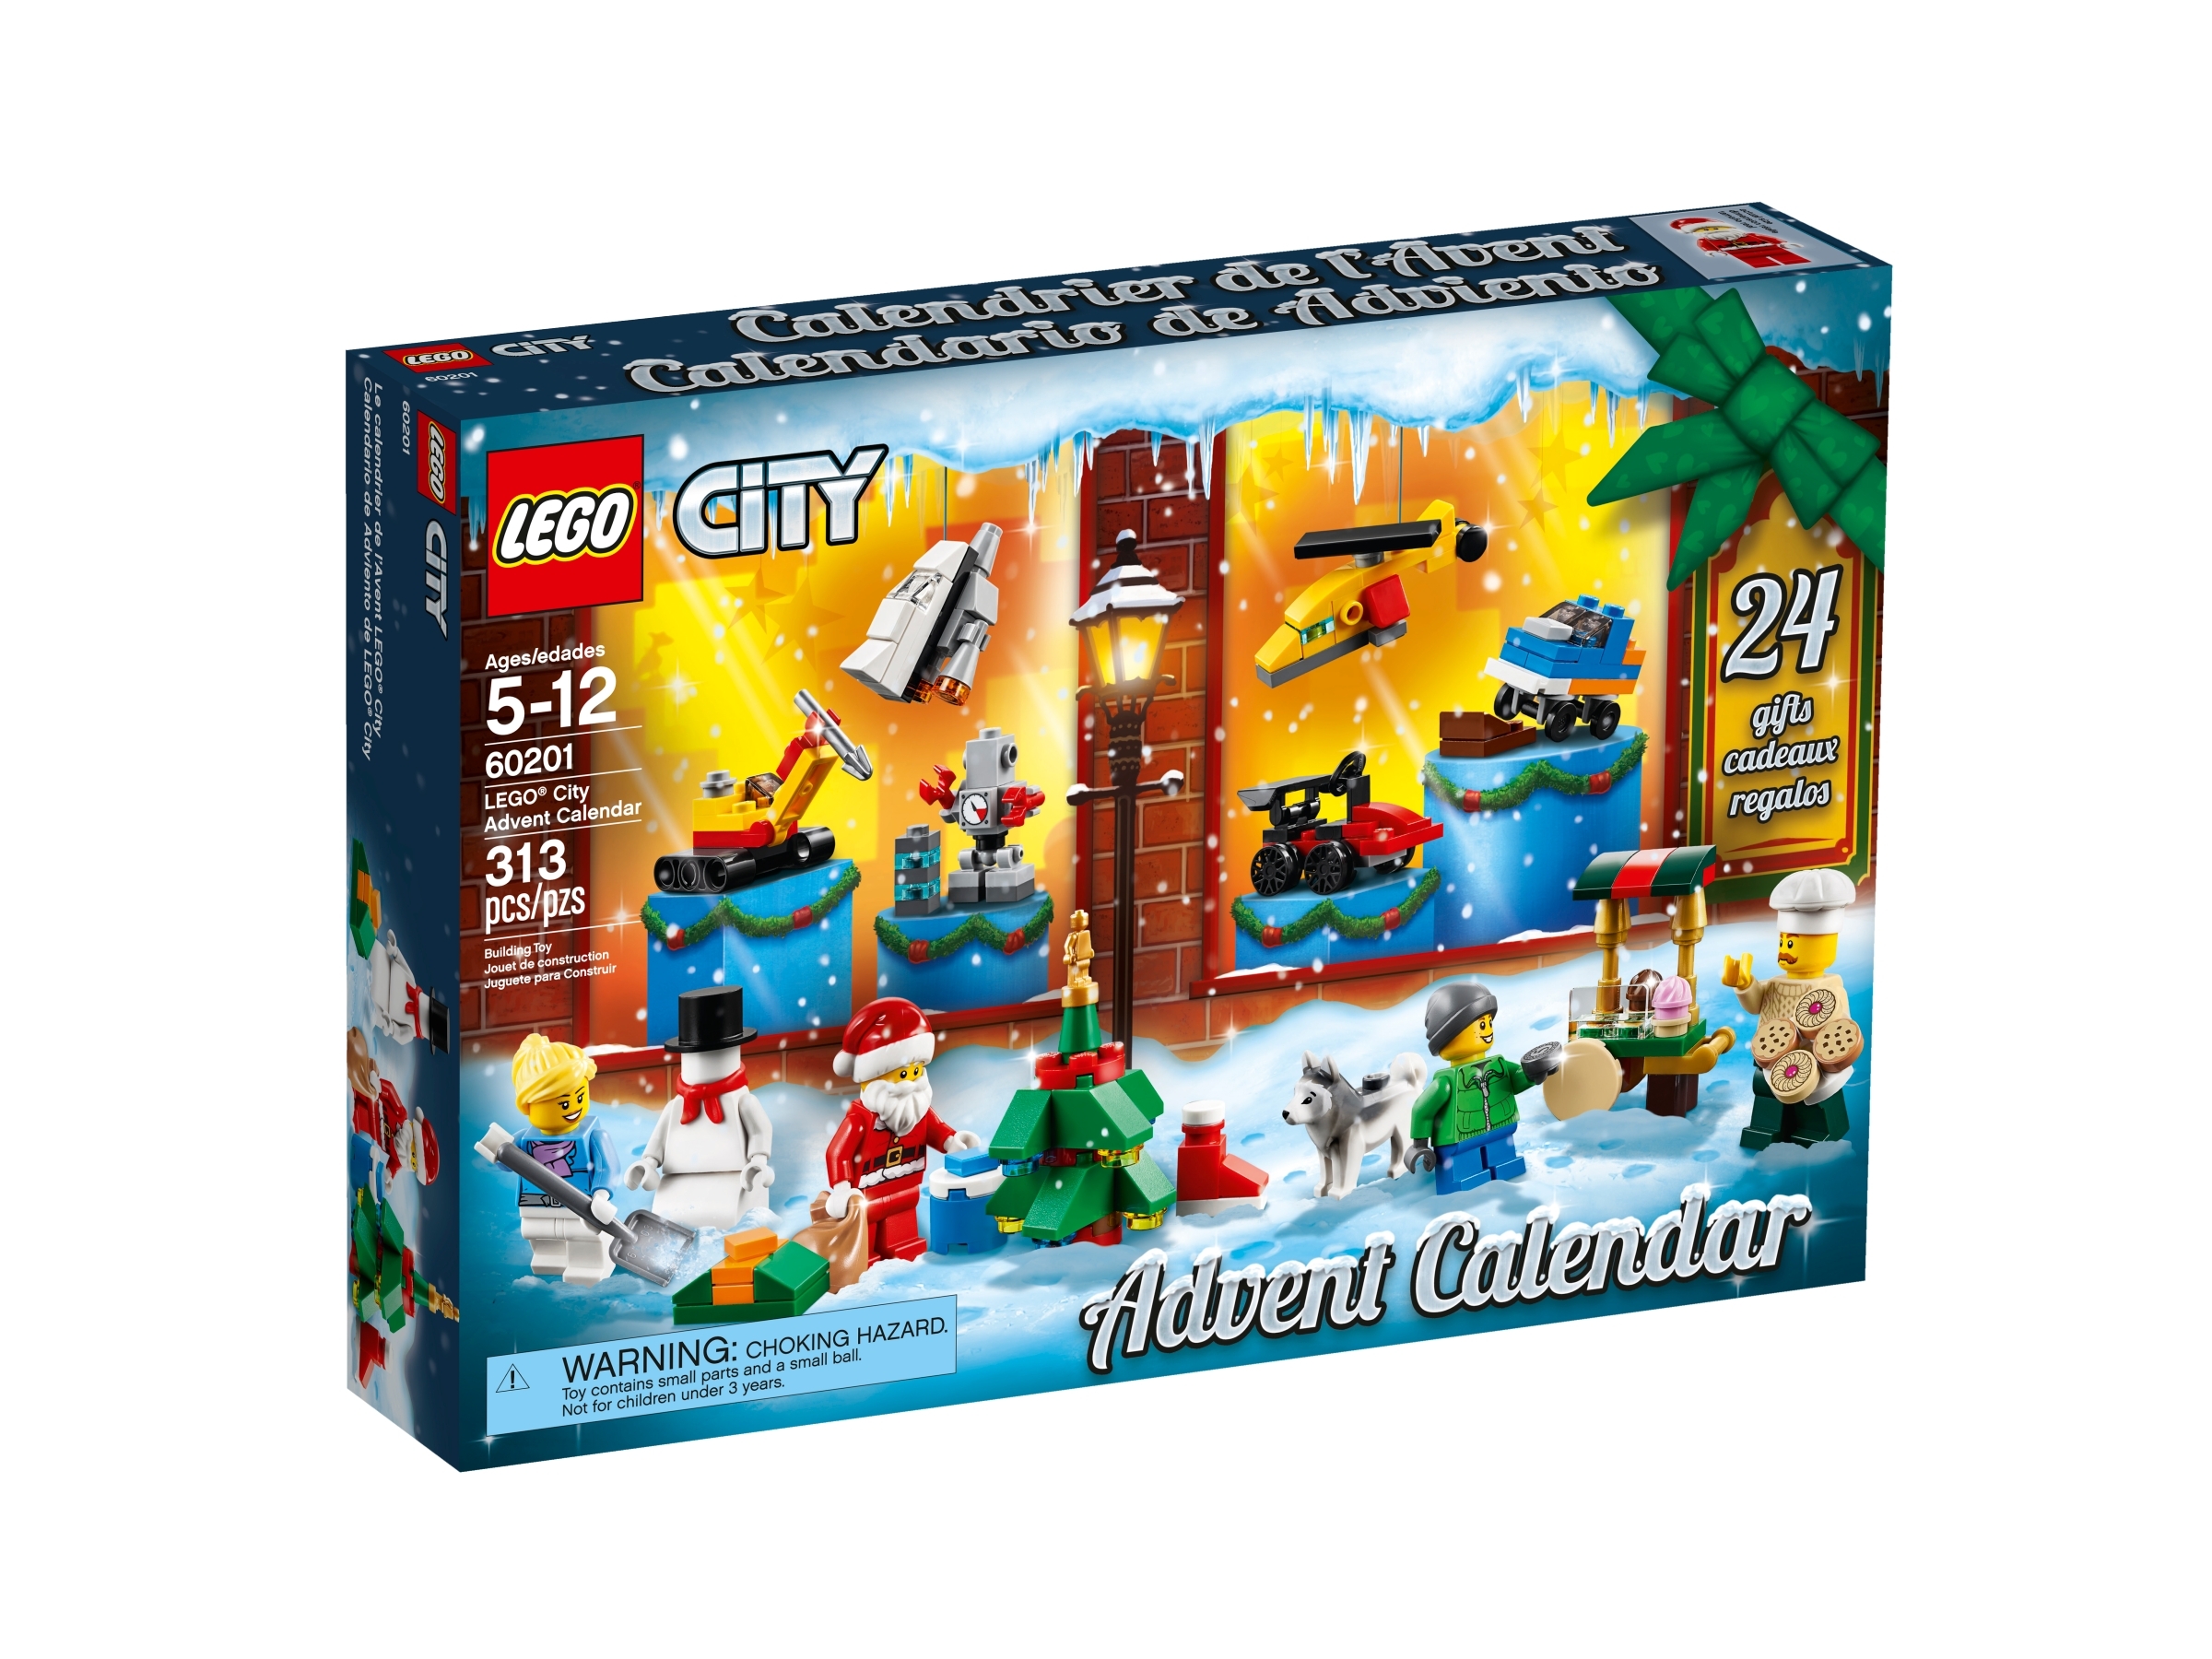 2019 lego city advent calendar